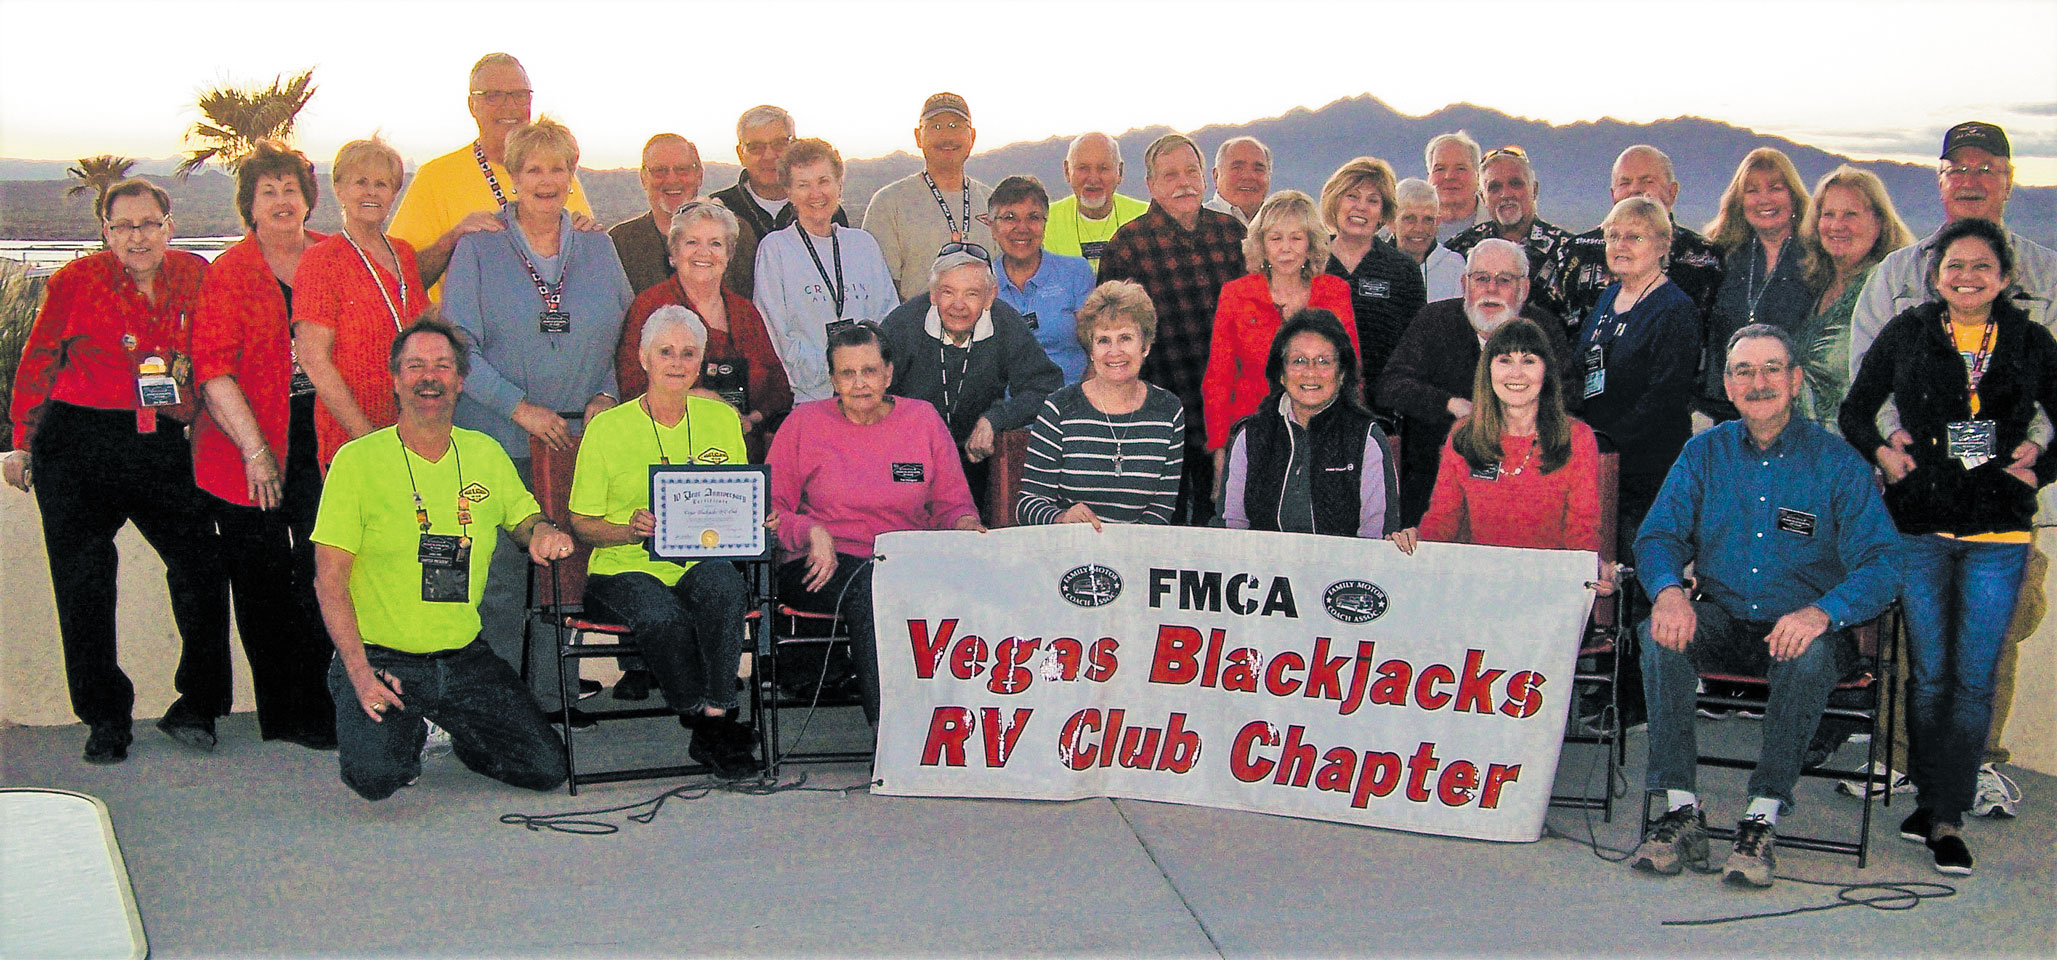 The Vegas Blackjacks RV Club